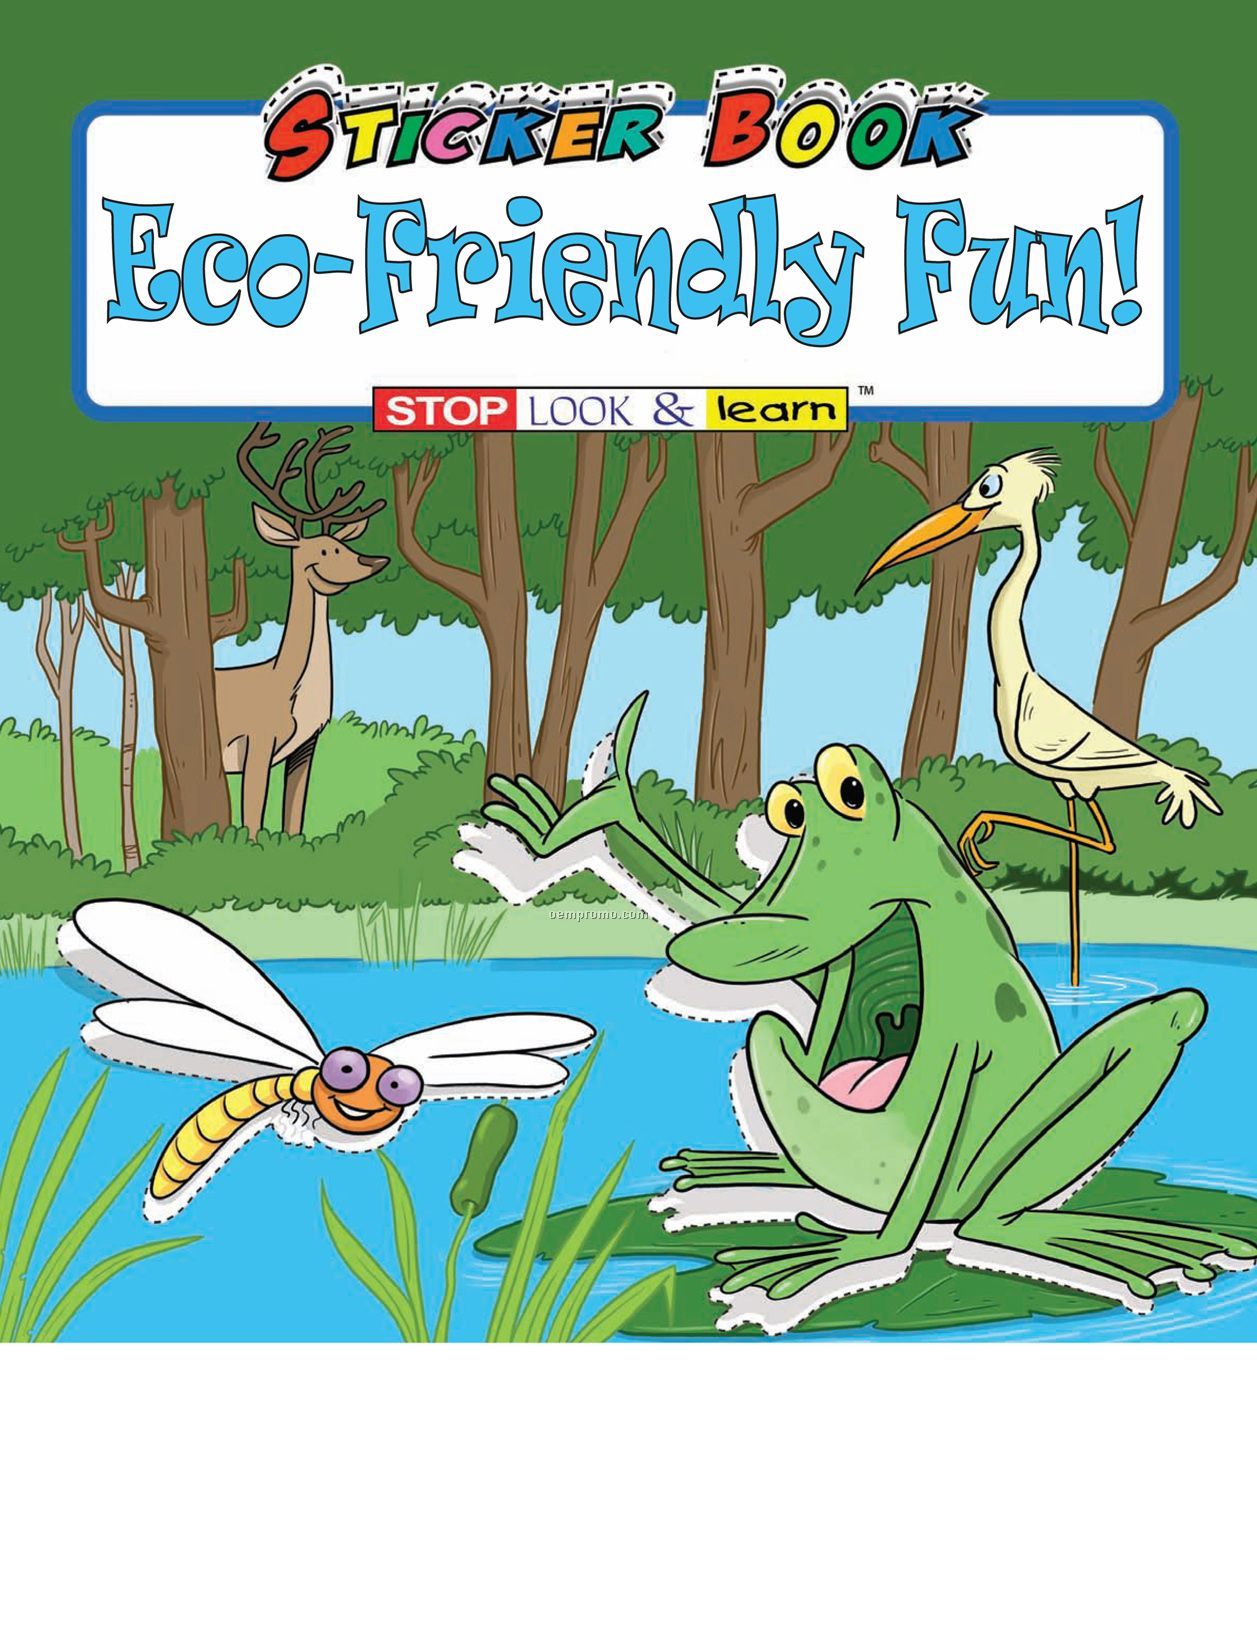 Eco-friendly Fun Sticker Book Fun Pack